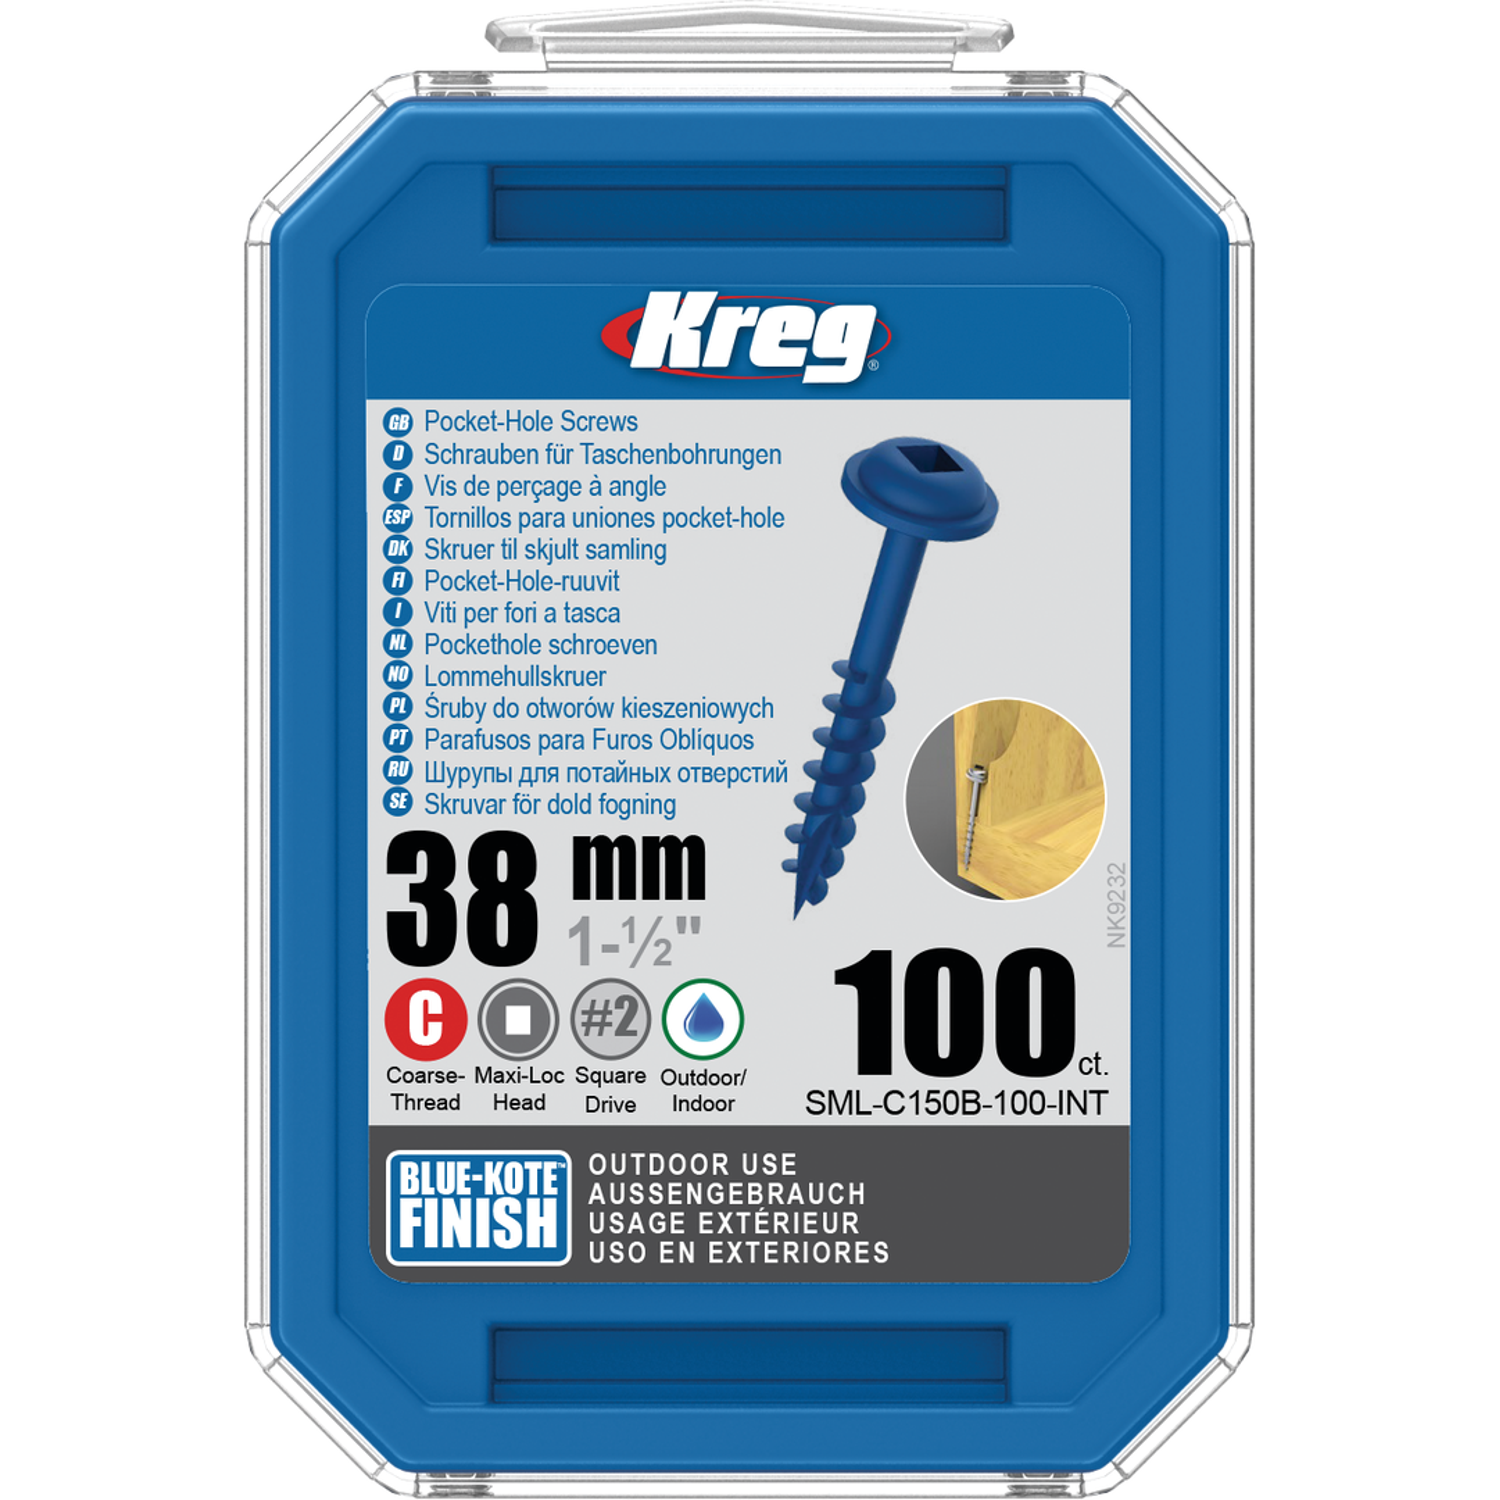 Billede af KREG Pocket-Hole skruer 38mm Blue-Kote Maxi-Loc grov gevind 100stk